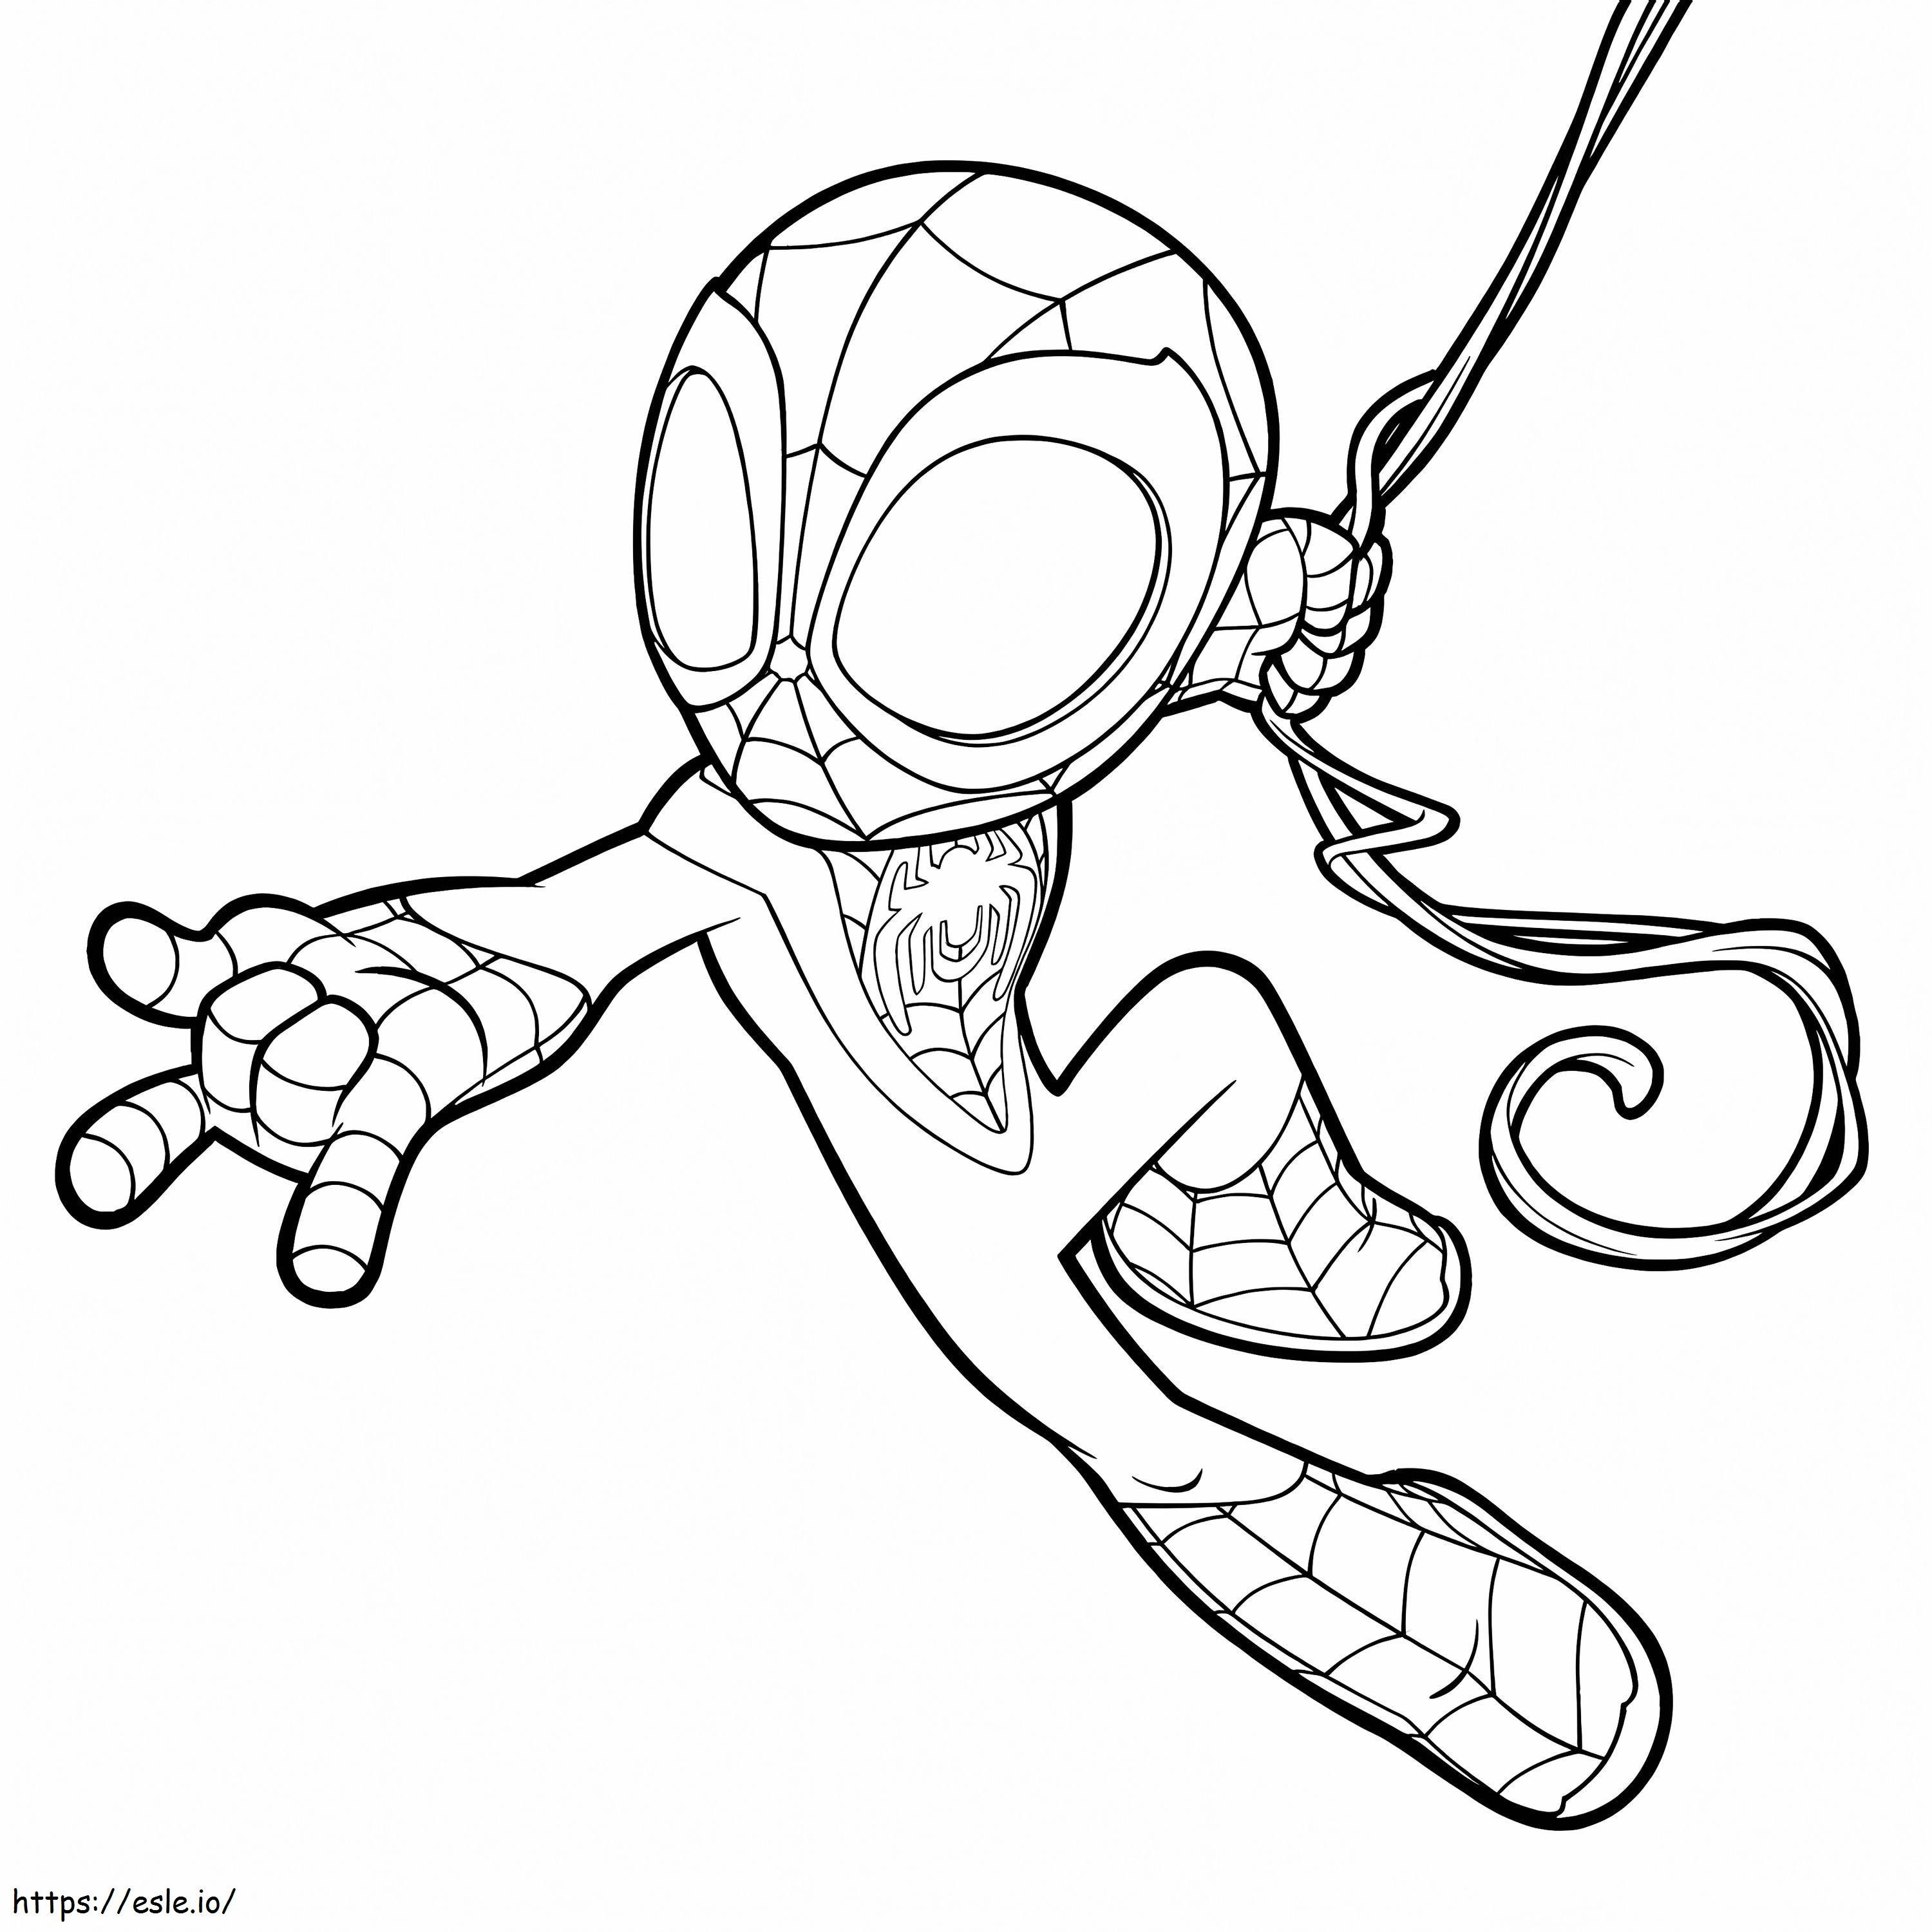 Design gratuito do Homem-Aranha para colorir